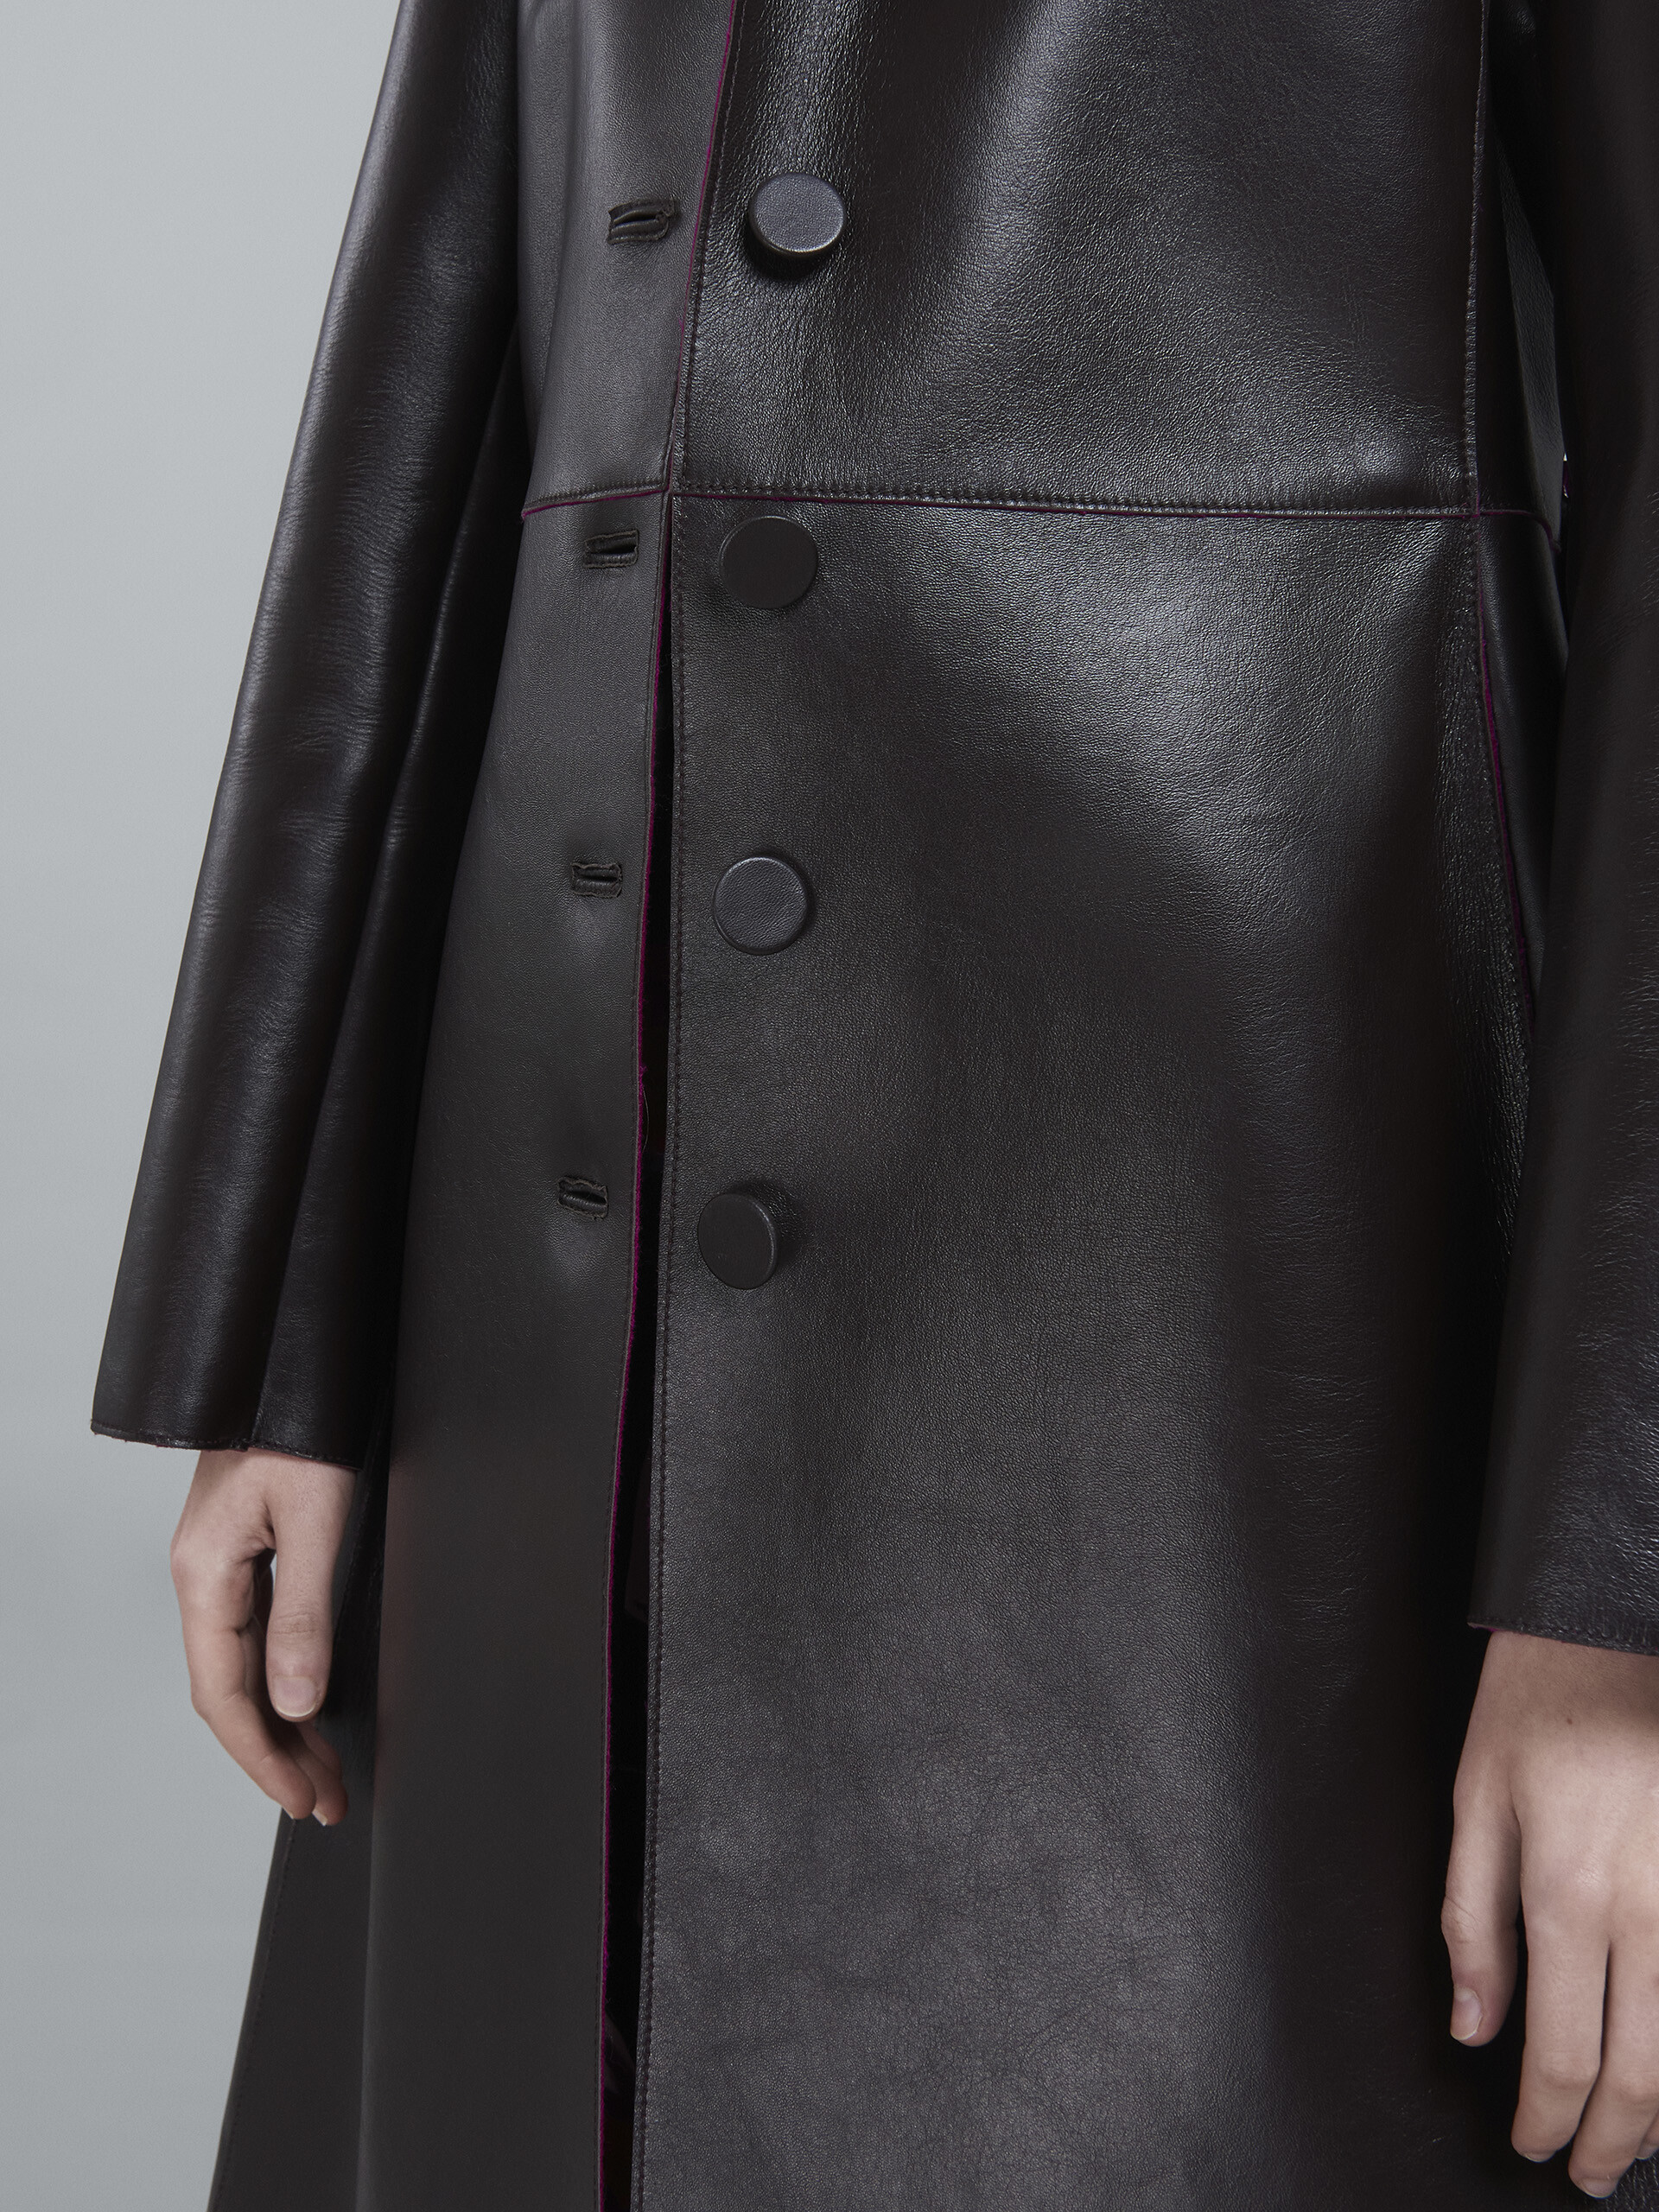 Leather coat - Coat - Image 5